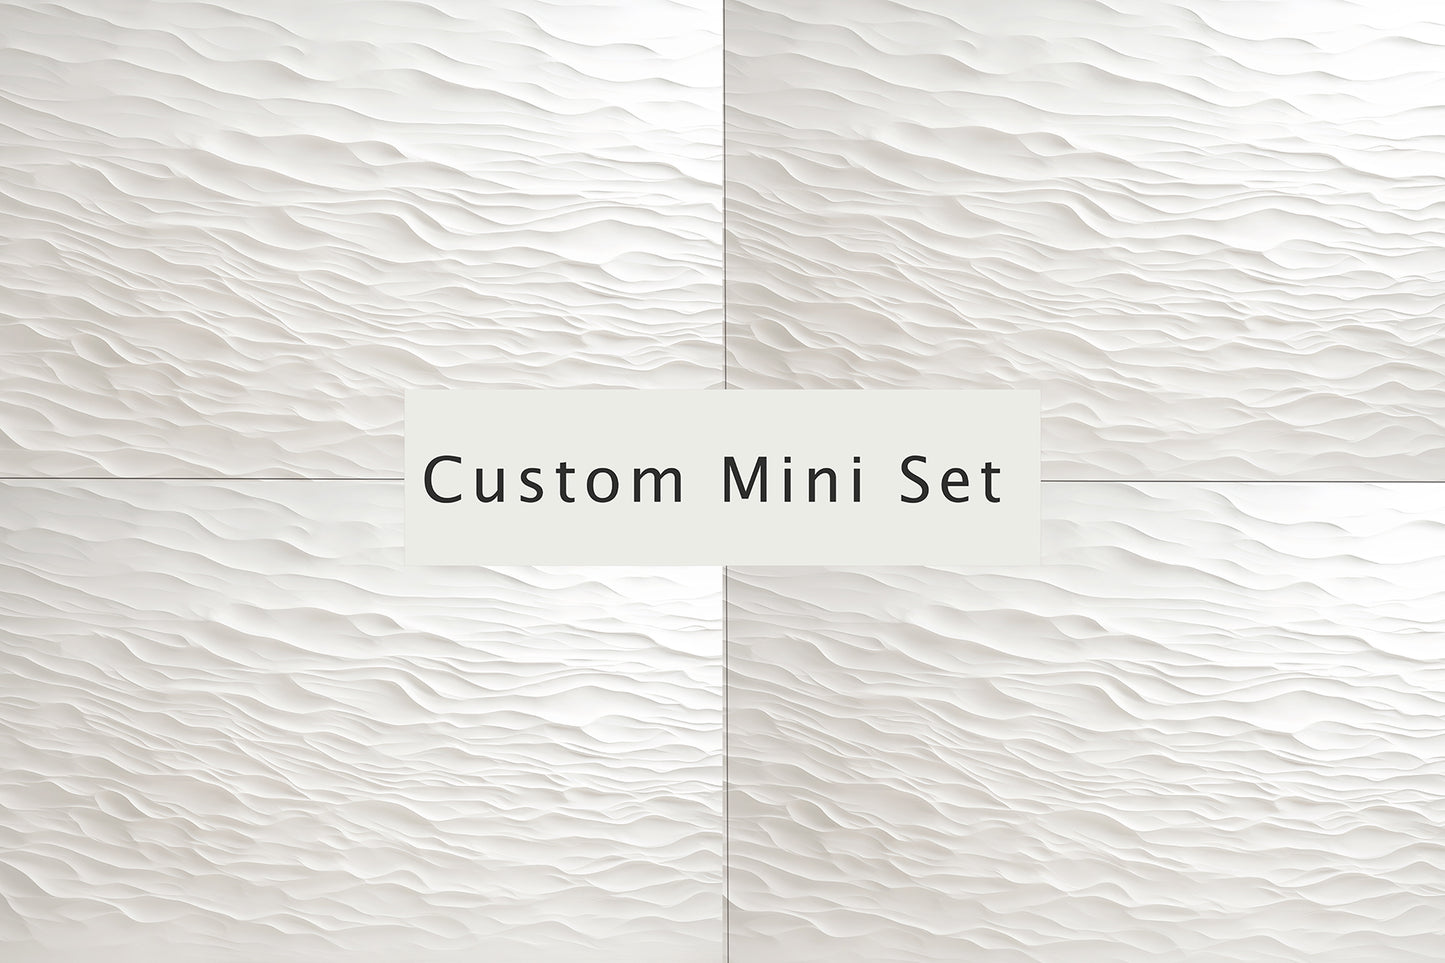 Custom Lux Mini Set - Choose Any 4